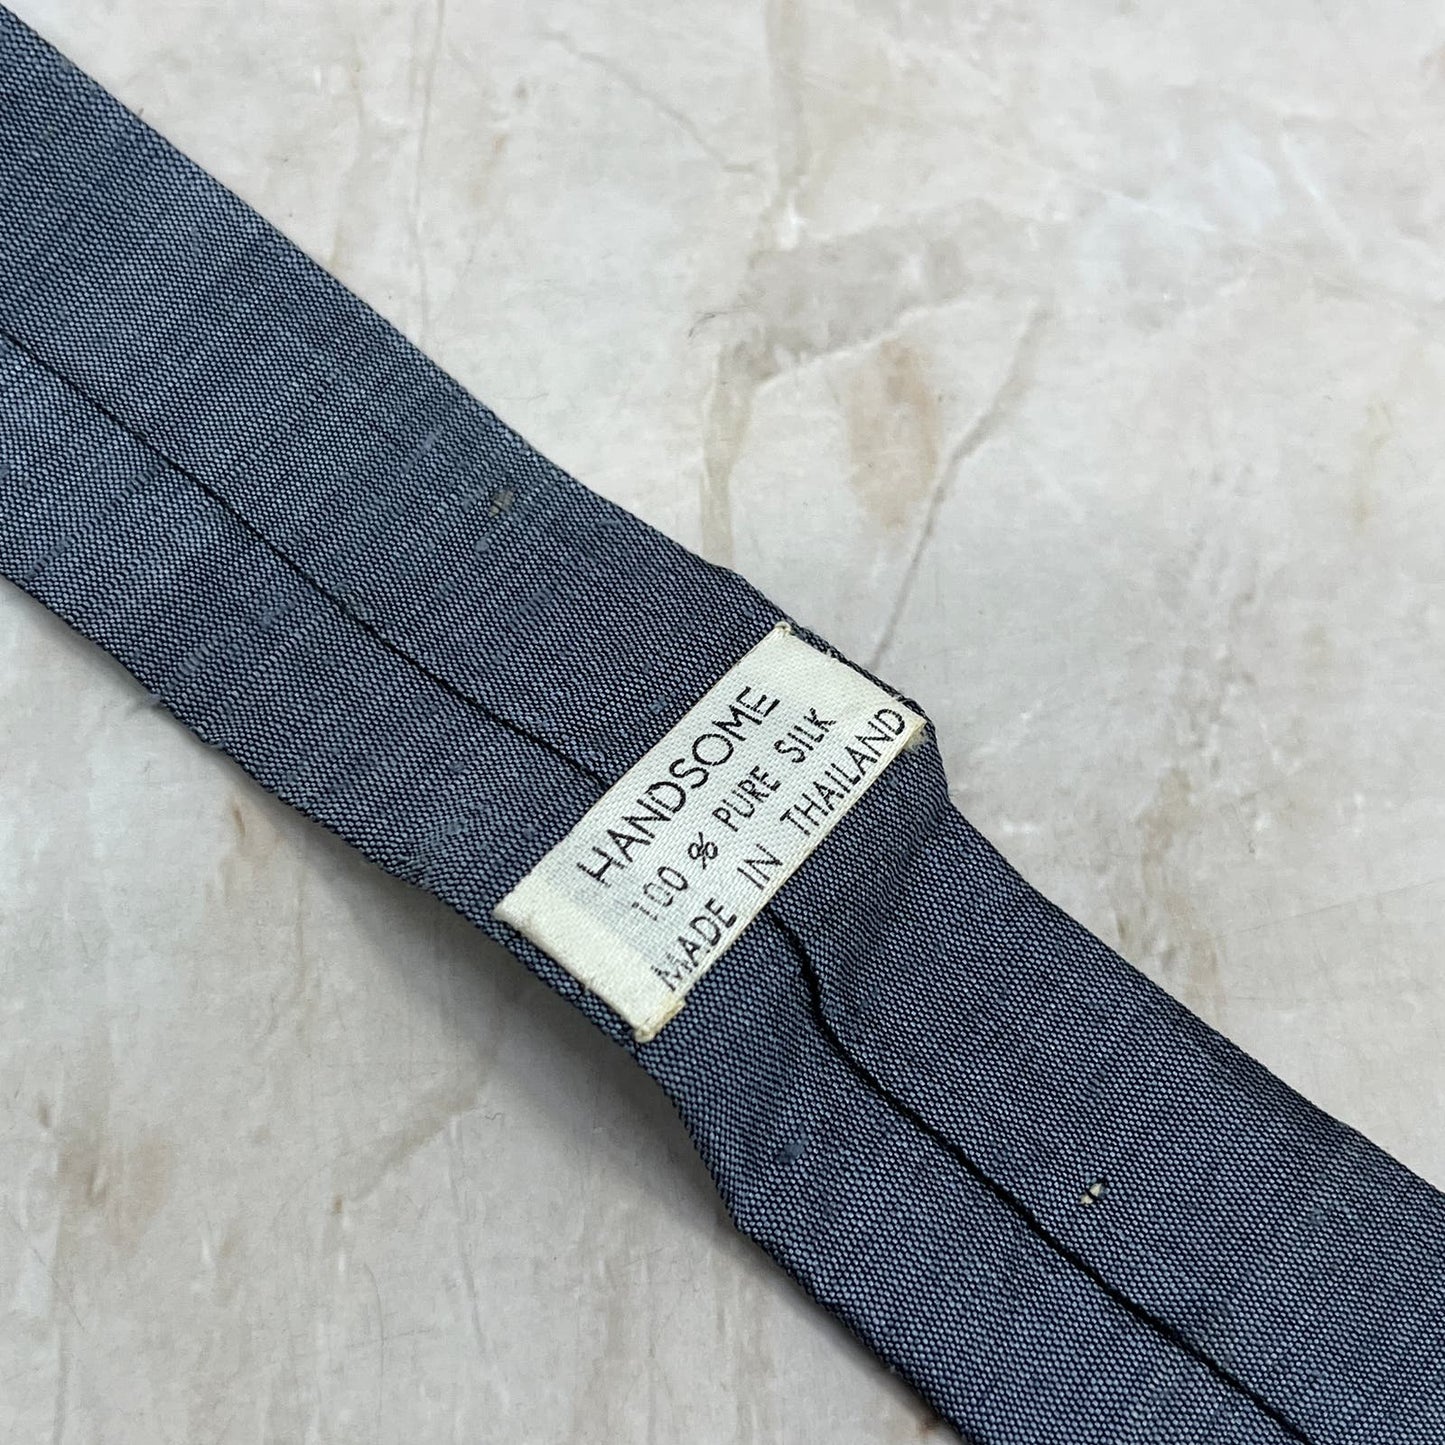 Retro Pure Silk Embroidered Made in Thailand Straight Slim Necktie Tie TJ4-T1